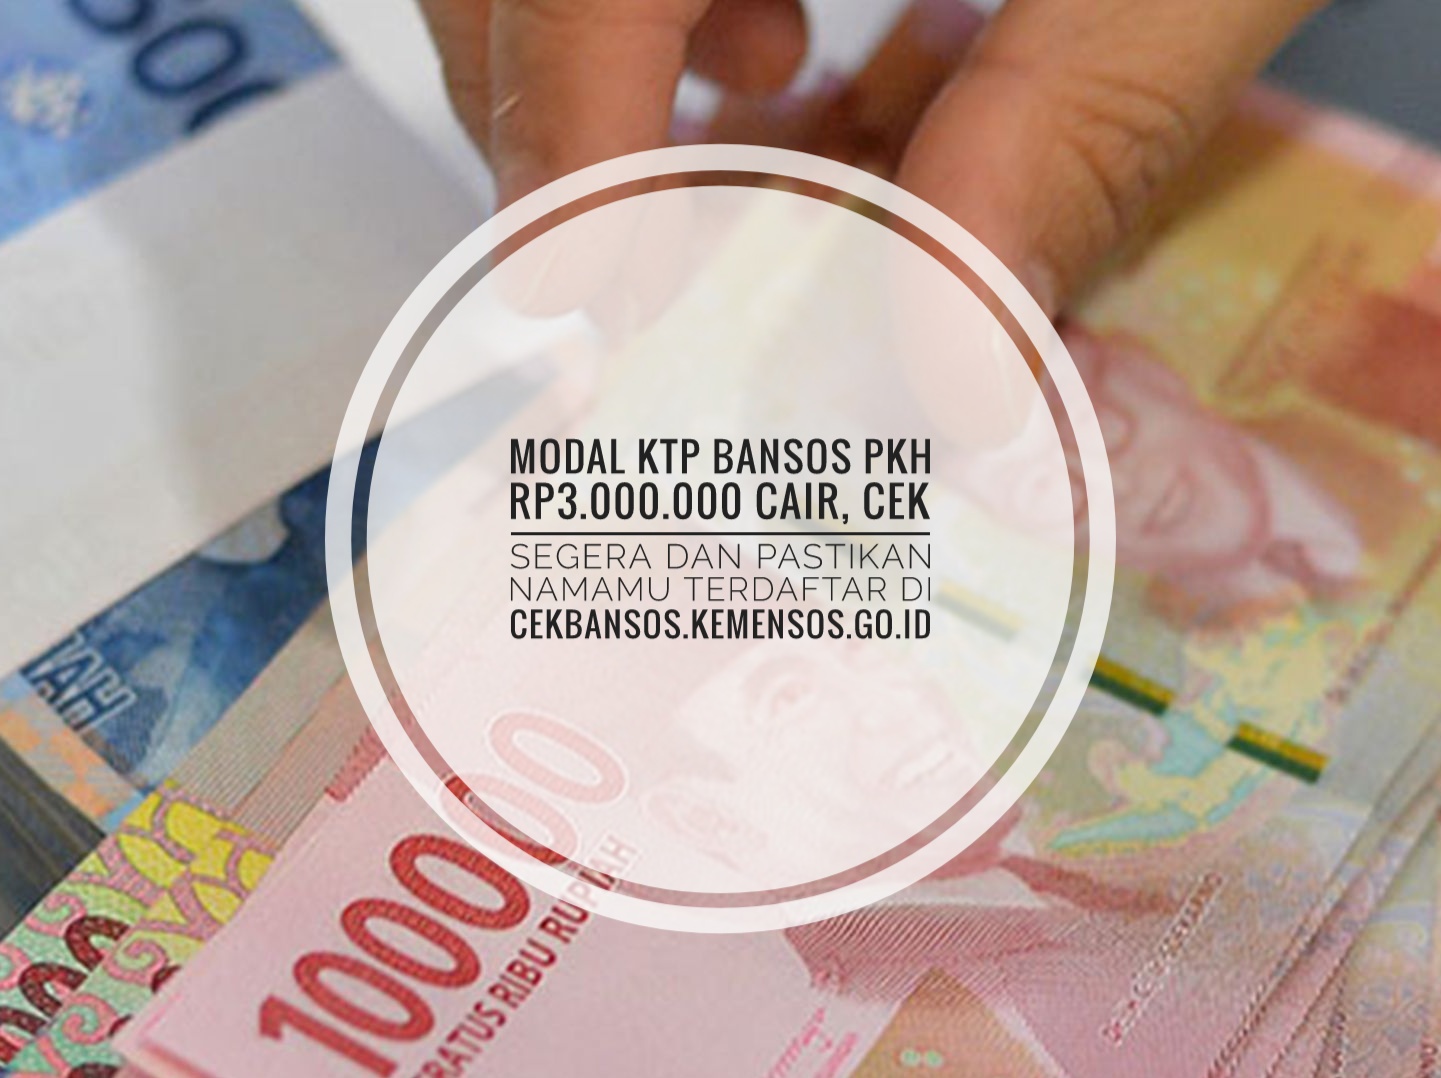 Modal KTP Bansos PKH Rp3.000.000 Cair, Cek Segera dan Pastikan Namamu Terdaftar di Cekbansos.kemensos.go.id